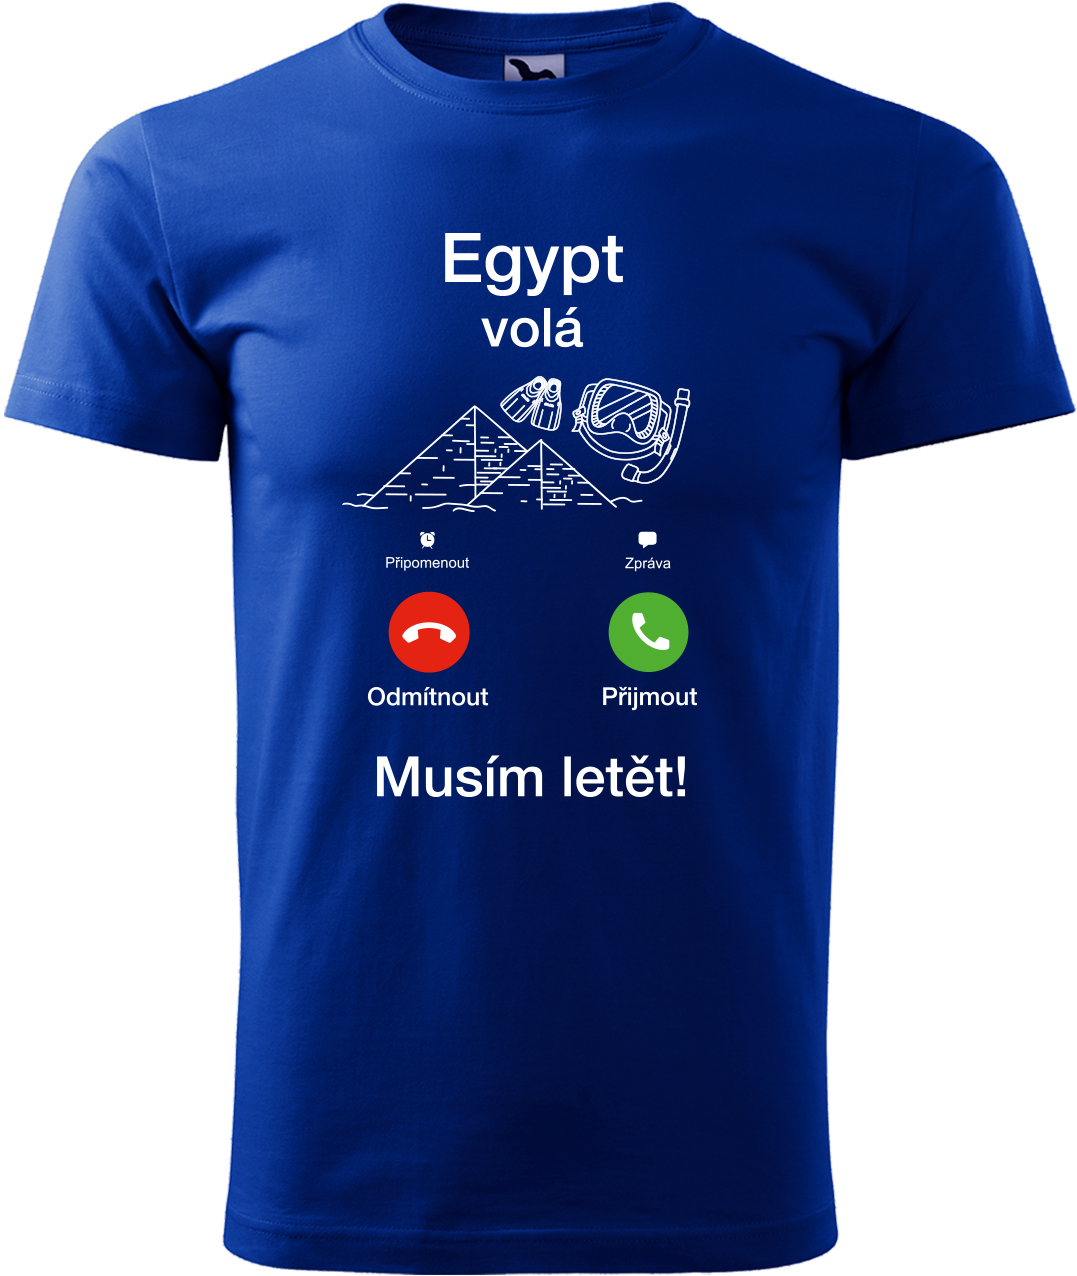 Pánské cestovatelské tričko - Egypt volá - musím letět! Velikost: XL, Barva: Královská modrá (05), Střih: pánský